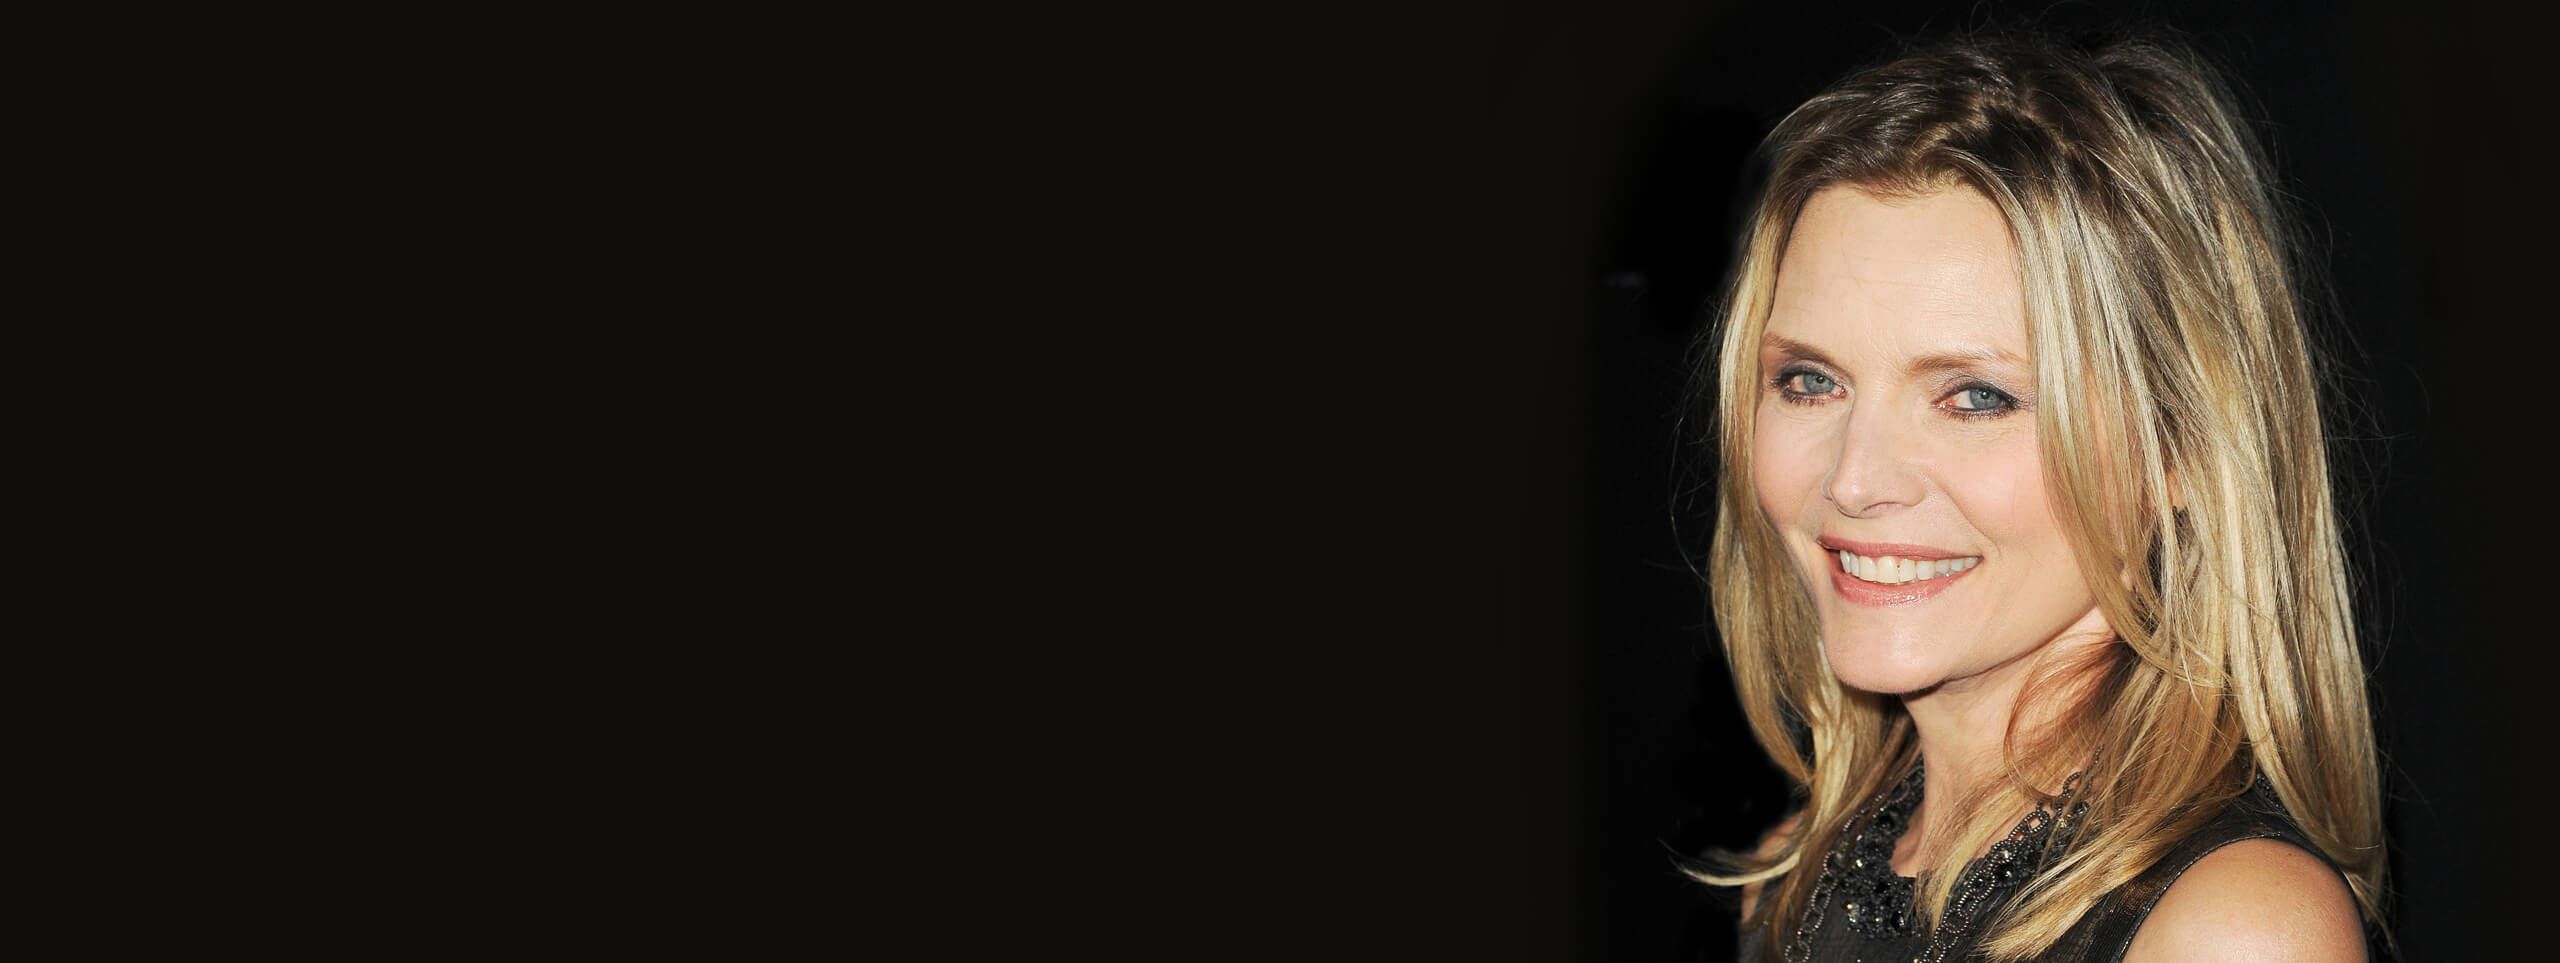 Michelle Pfeiffer de trois quart en blonde